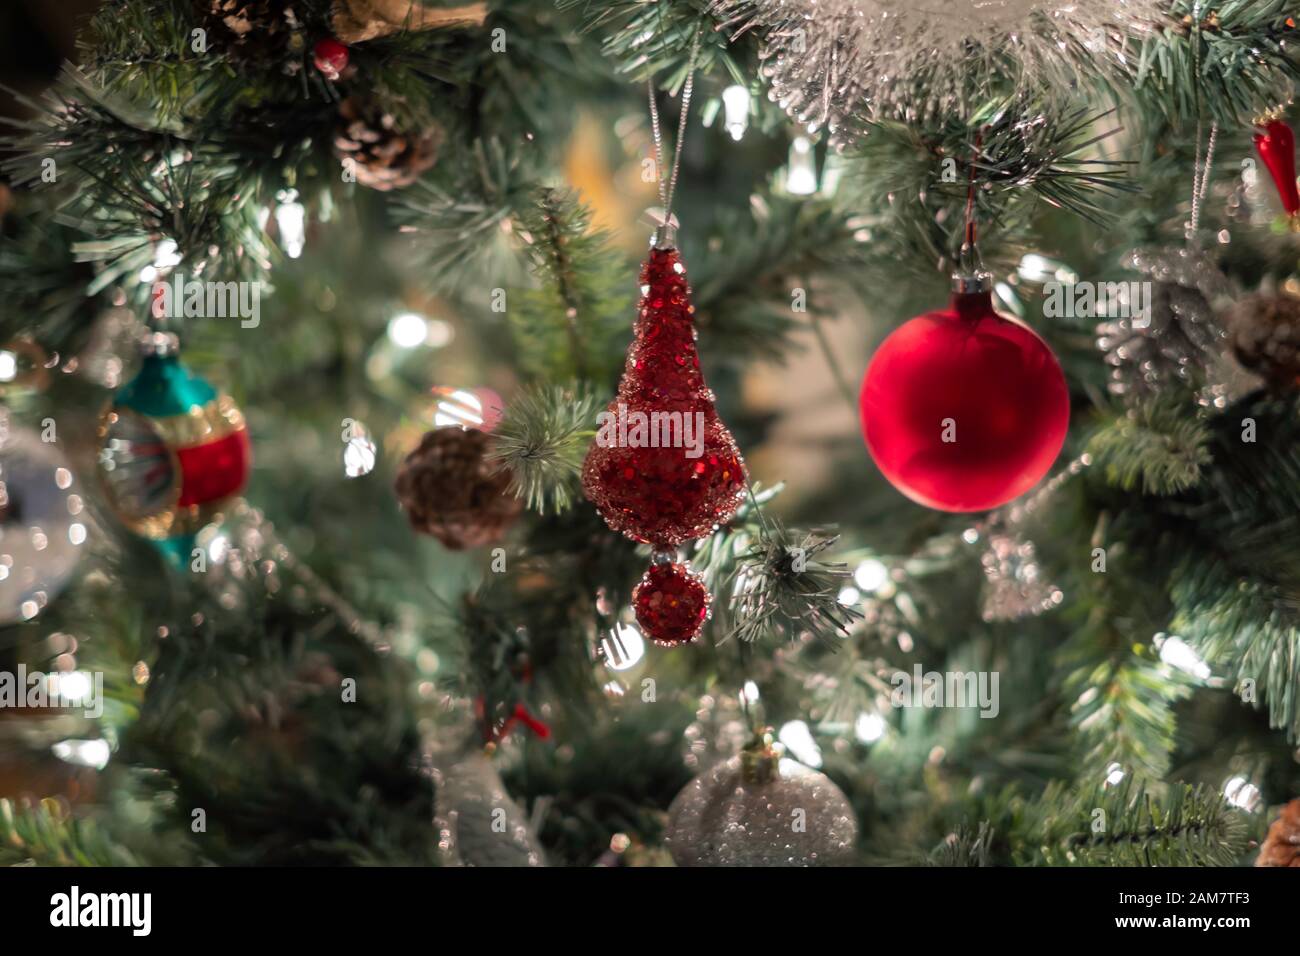 Libre d'un allumé arbre de Noël avec des ornements rouge et argent des lumières de Noël. Banque D'Images